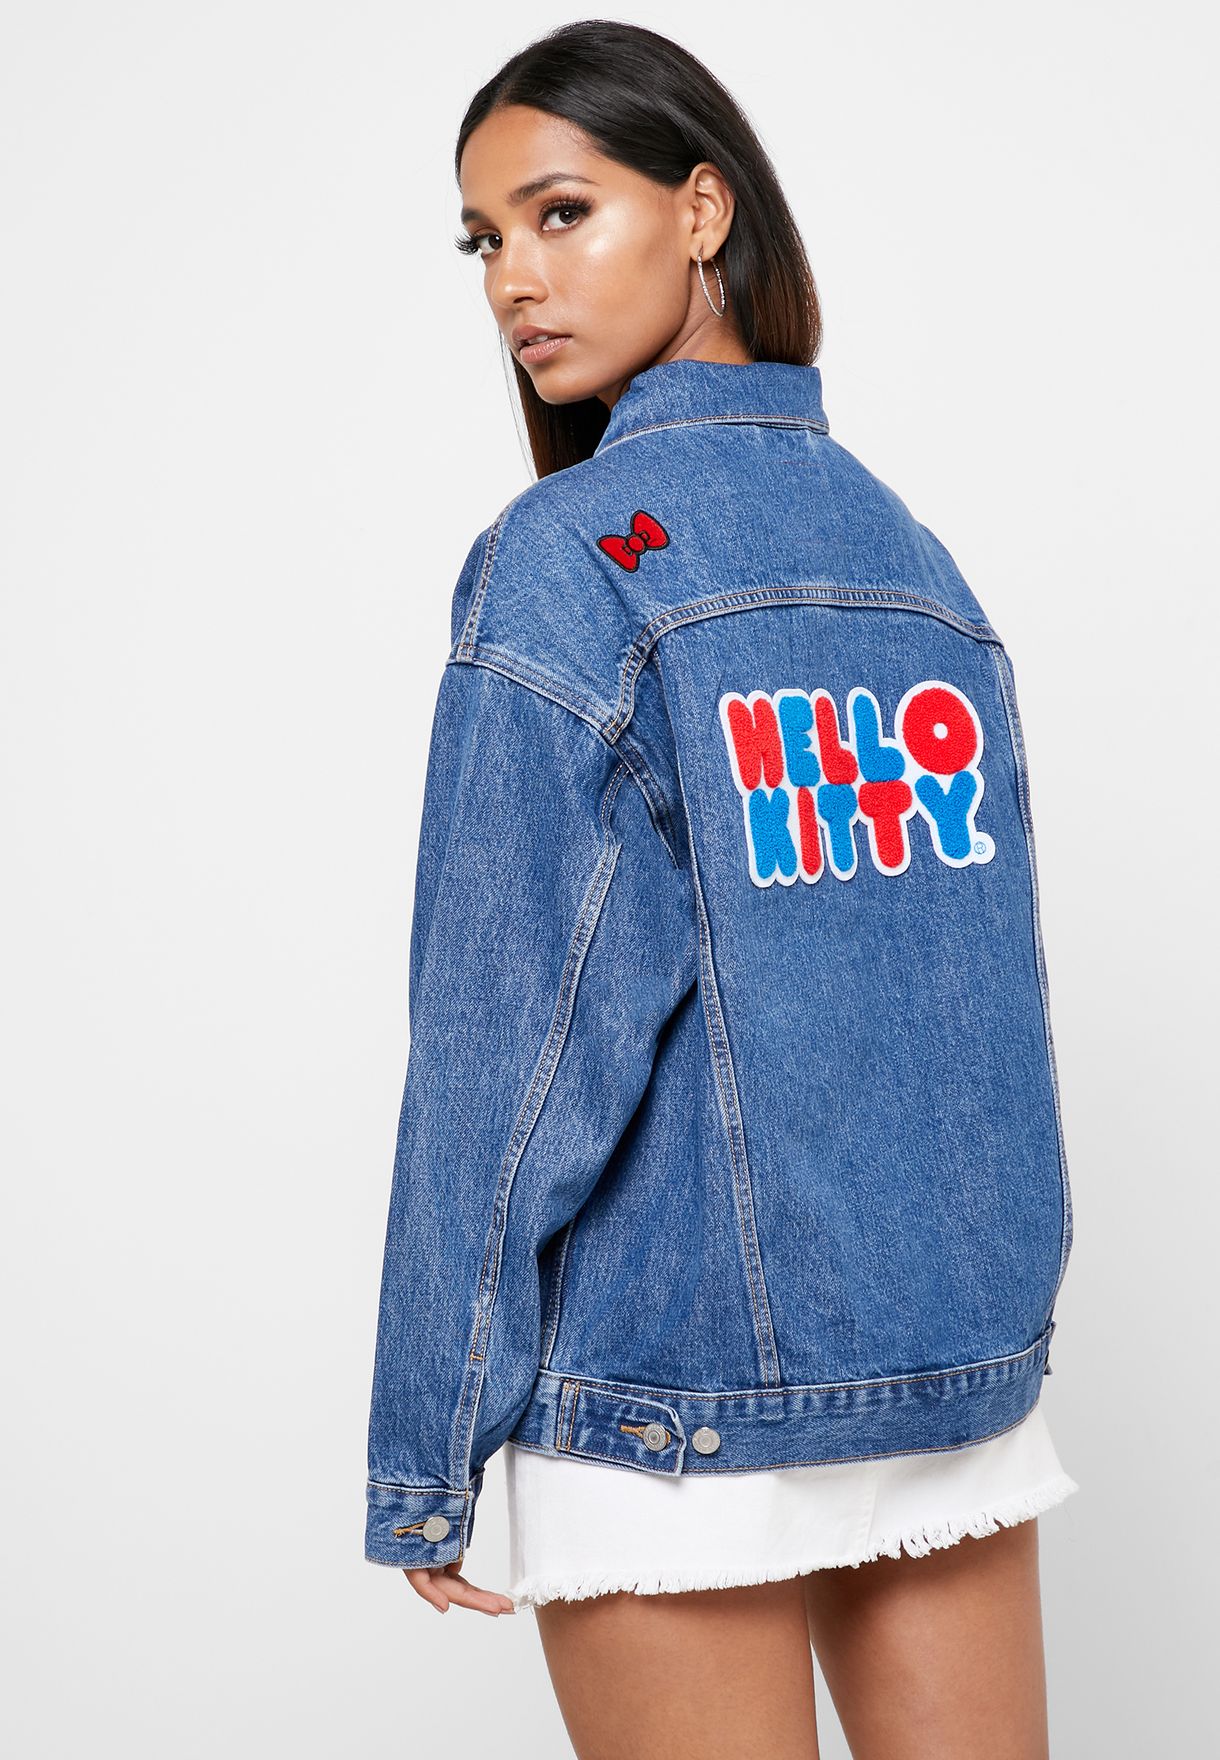 Hello Kitty Levis Jacket on Sale, 57% OFF 